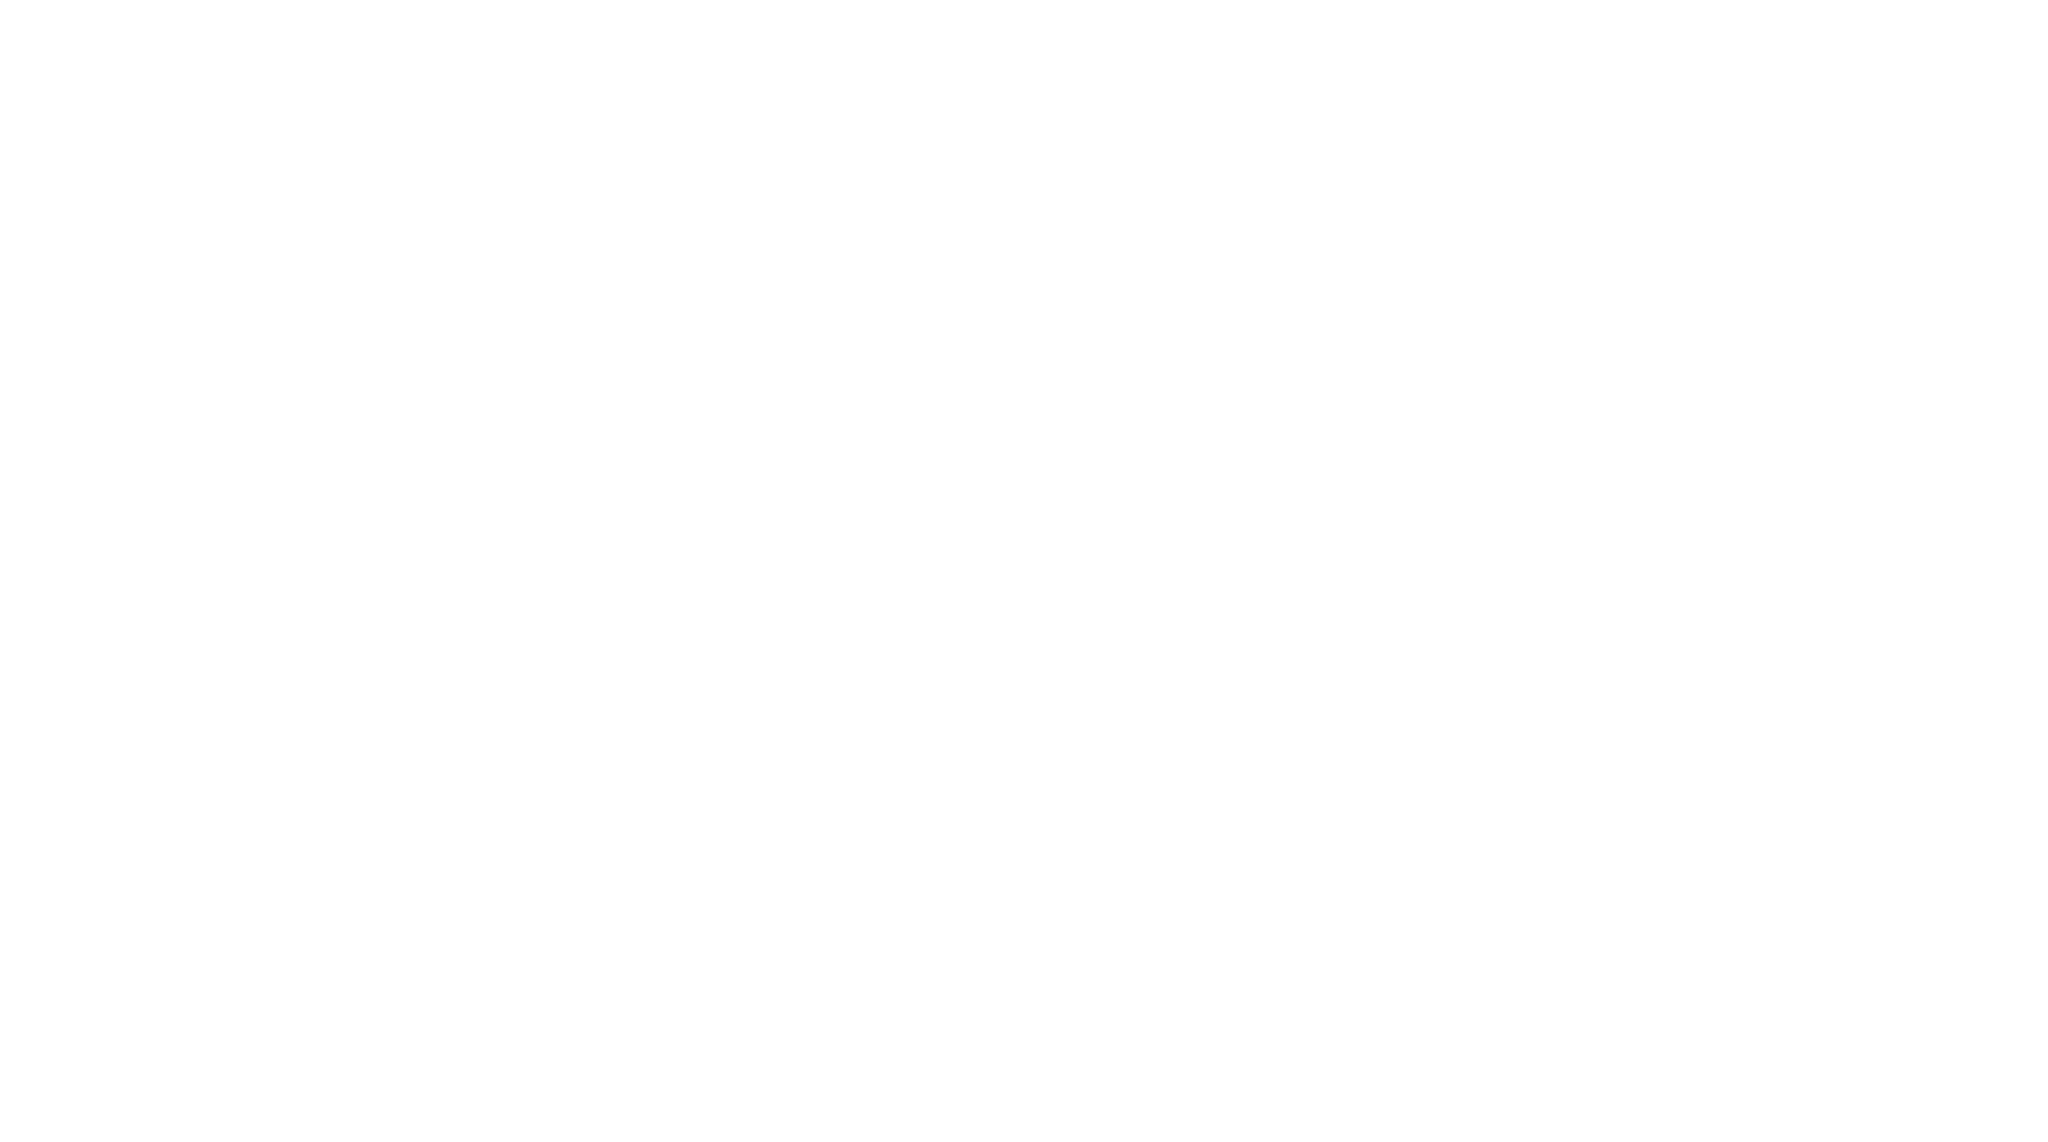 AntGuide Logo